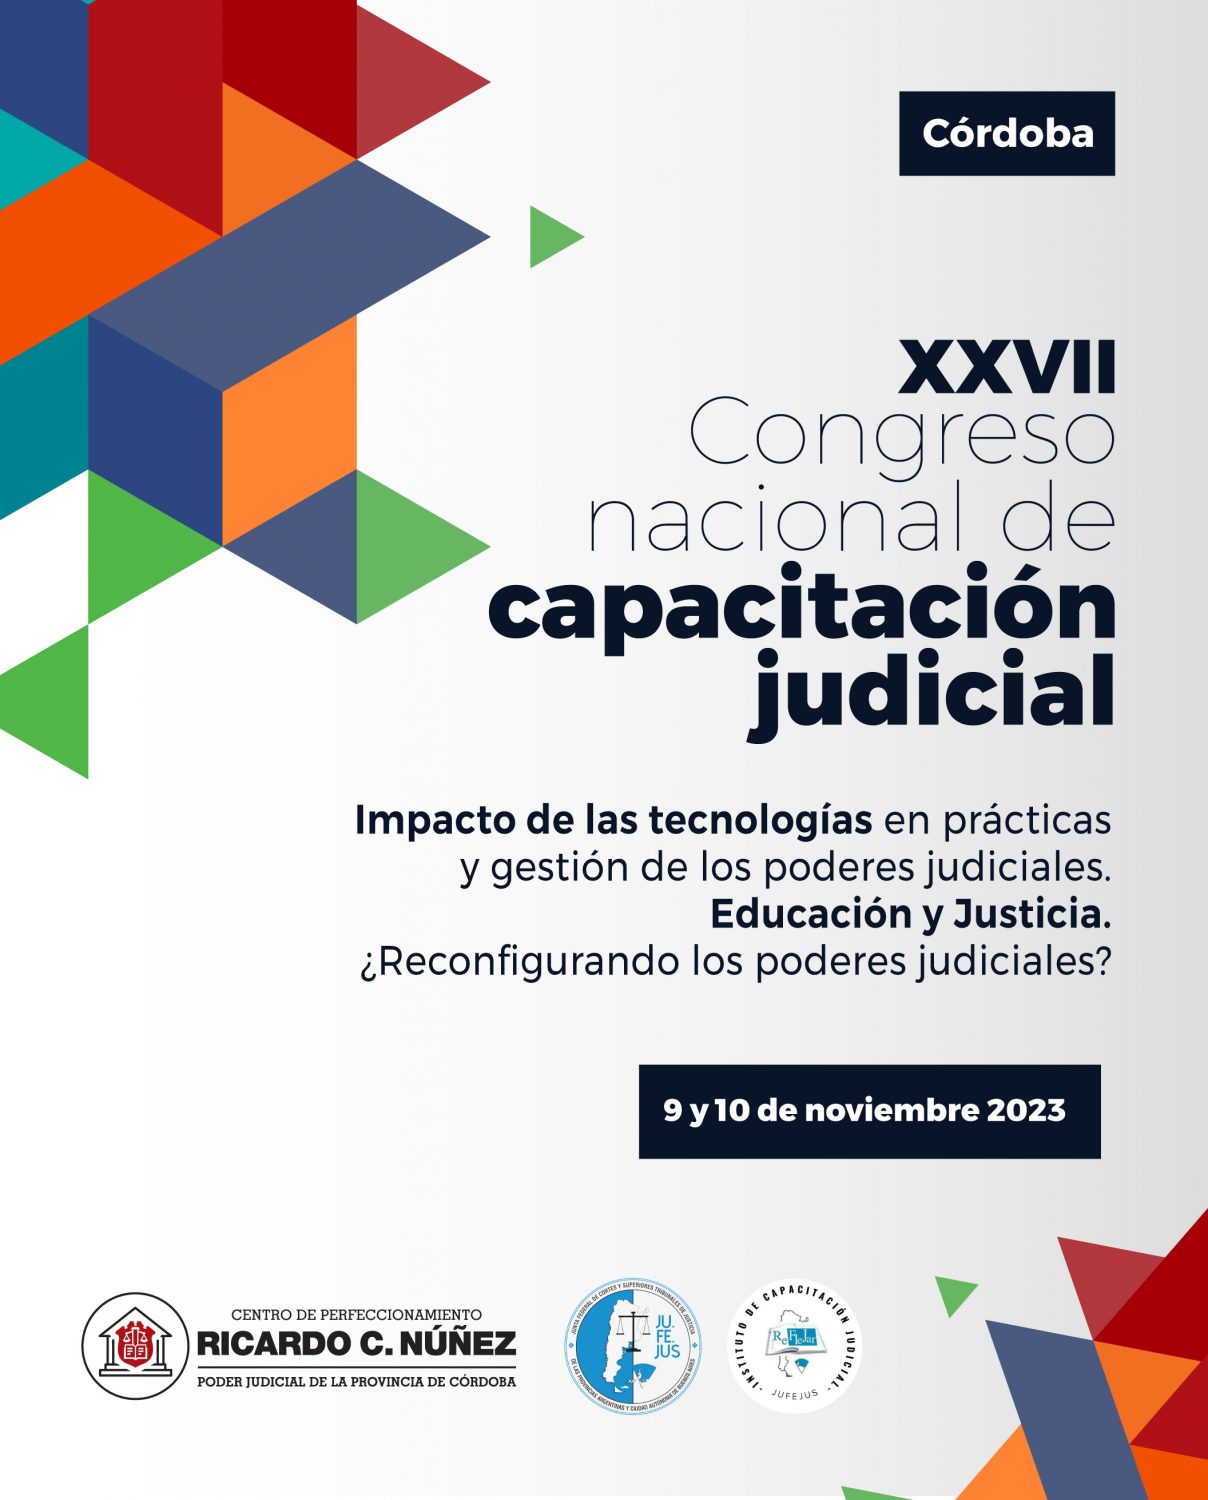 27º CONGRESO DE CAPACITACIÓN JUDICIAL: SE TRANSMITIRÁN LAS CONFERENCIAS